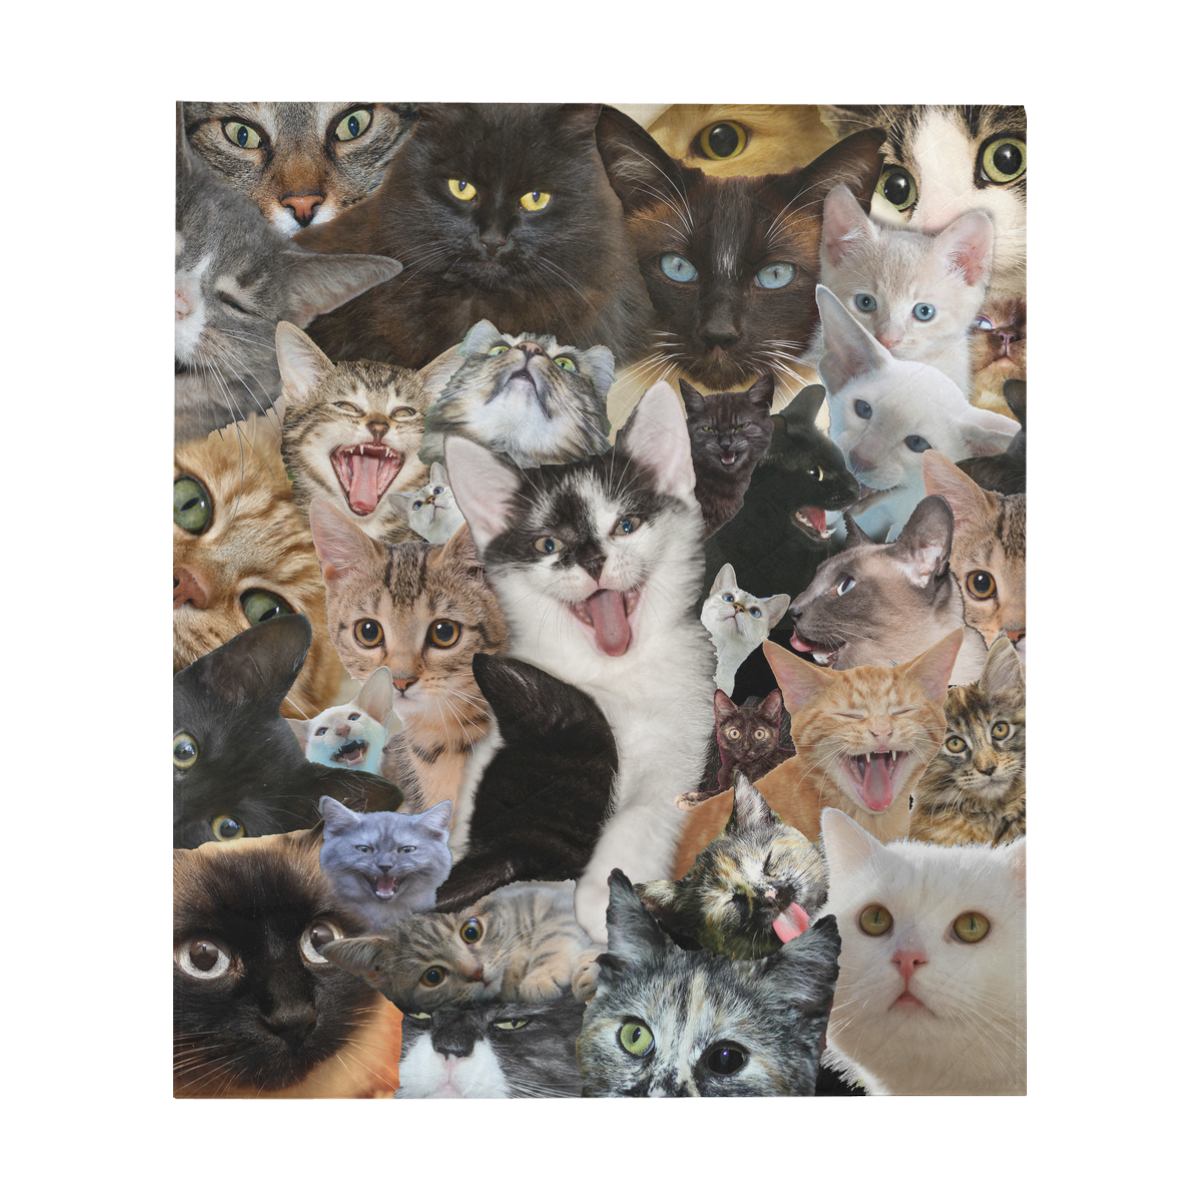 Crazy Kitten Show Quilt 60"x70"